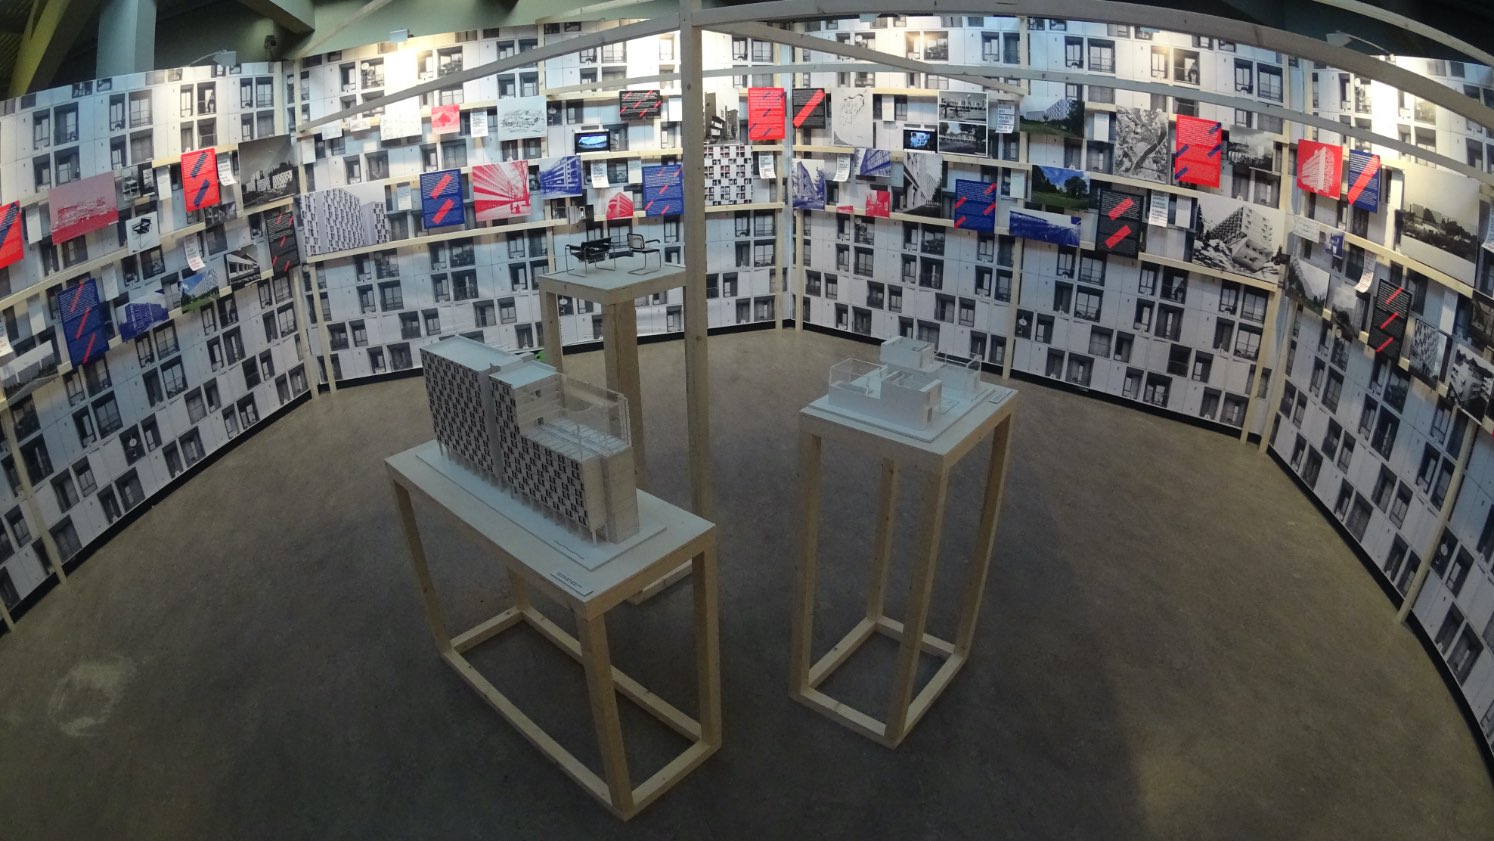 Imagen de los paneles y maquetas dispuestos en la sala de exposiciones del museo cemento rezola.